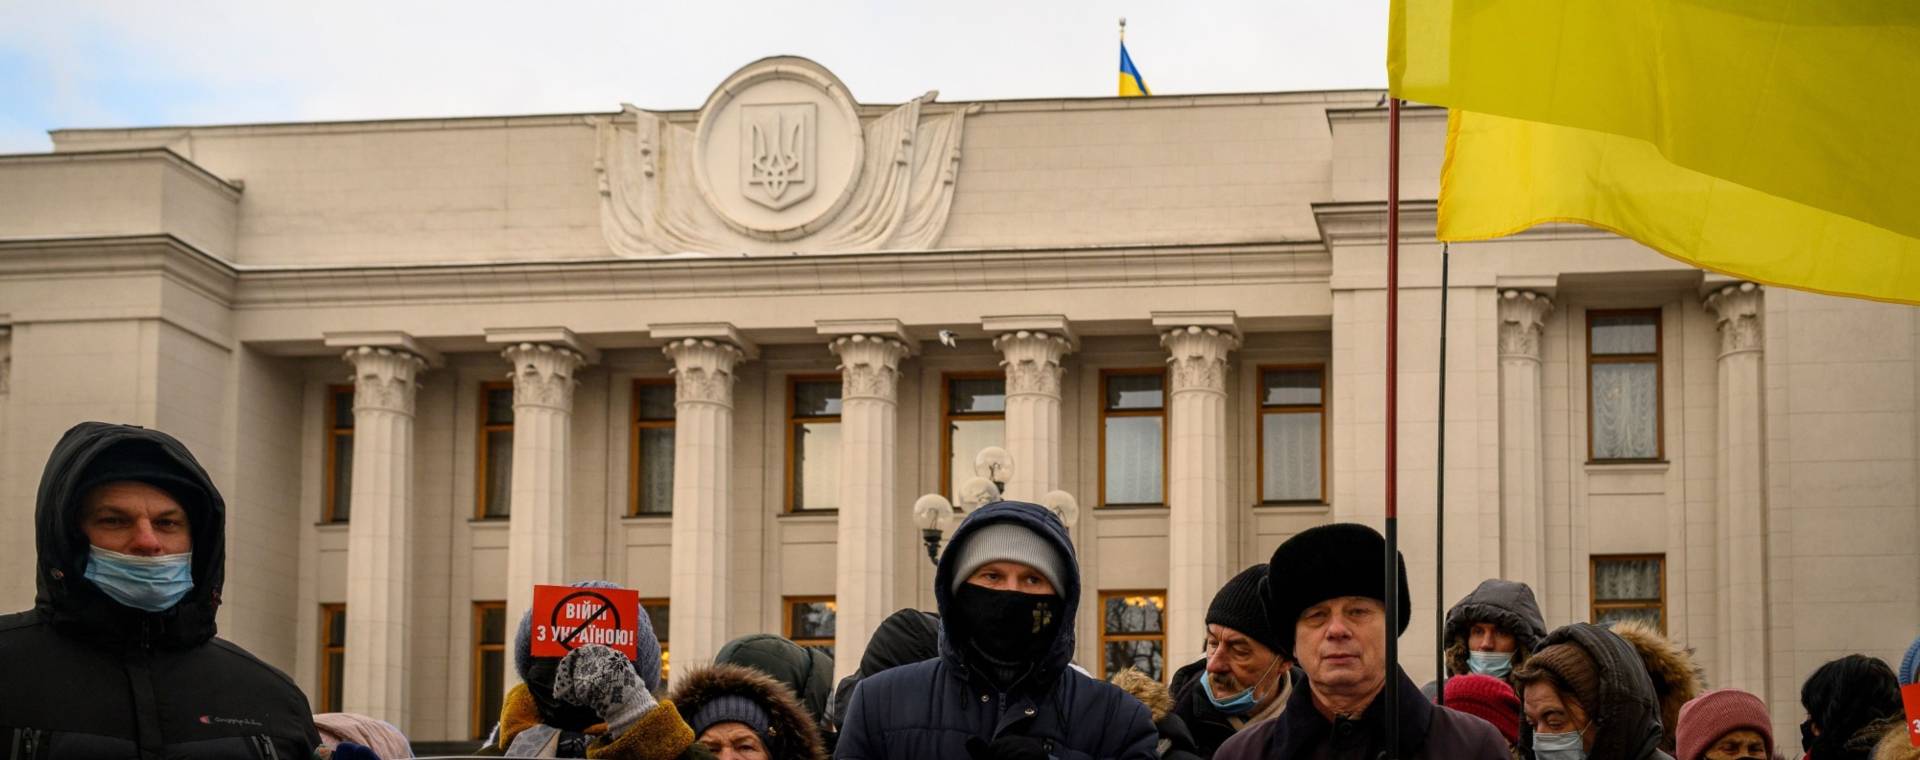 Para demonstran dari kelompok antipeperangan dengan Rusia berada di luar gedung parlemen nasional Ukraina, juga dikenal sebagai Rada Verkhova, di Kyiv, Ukraina.  - Bloomberg